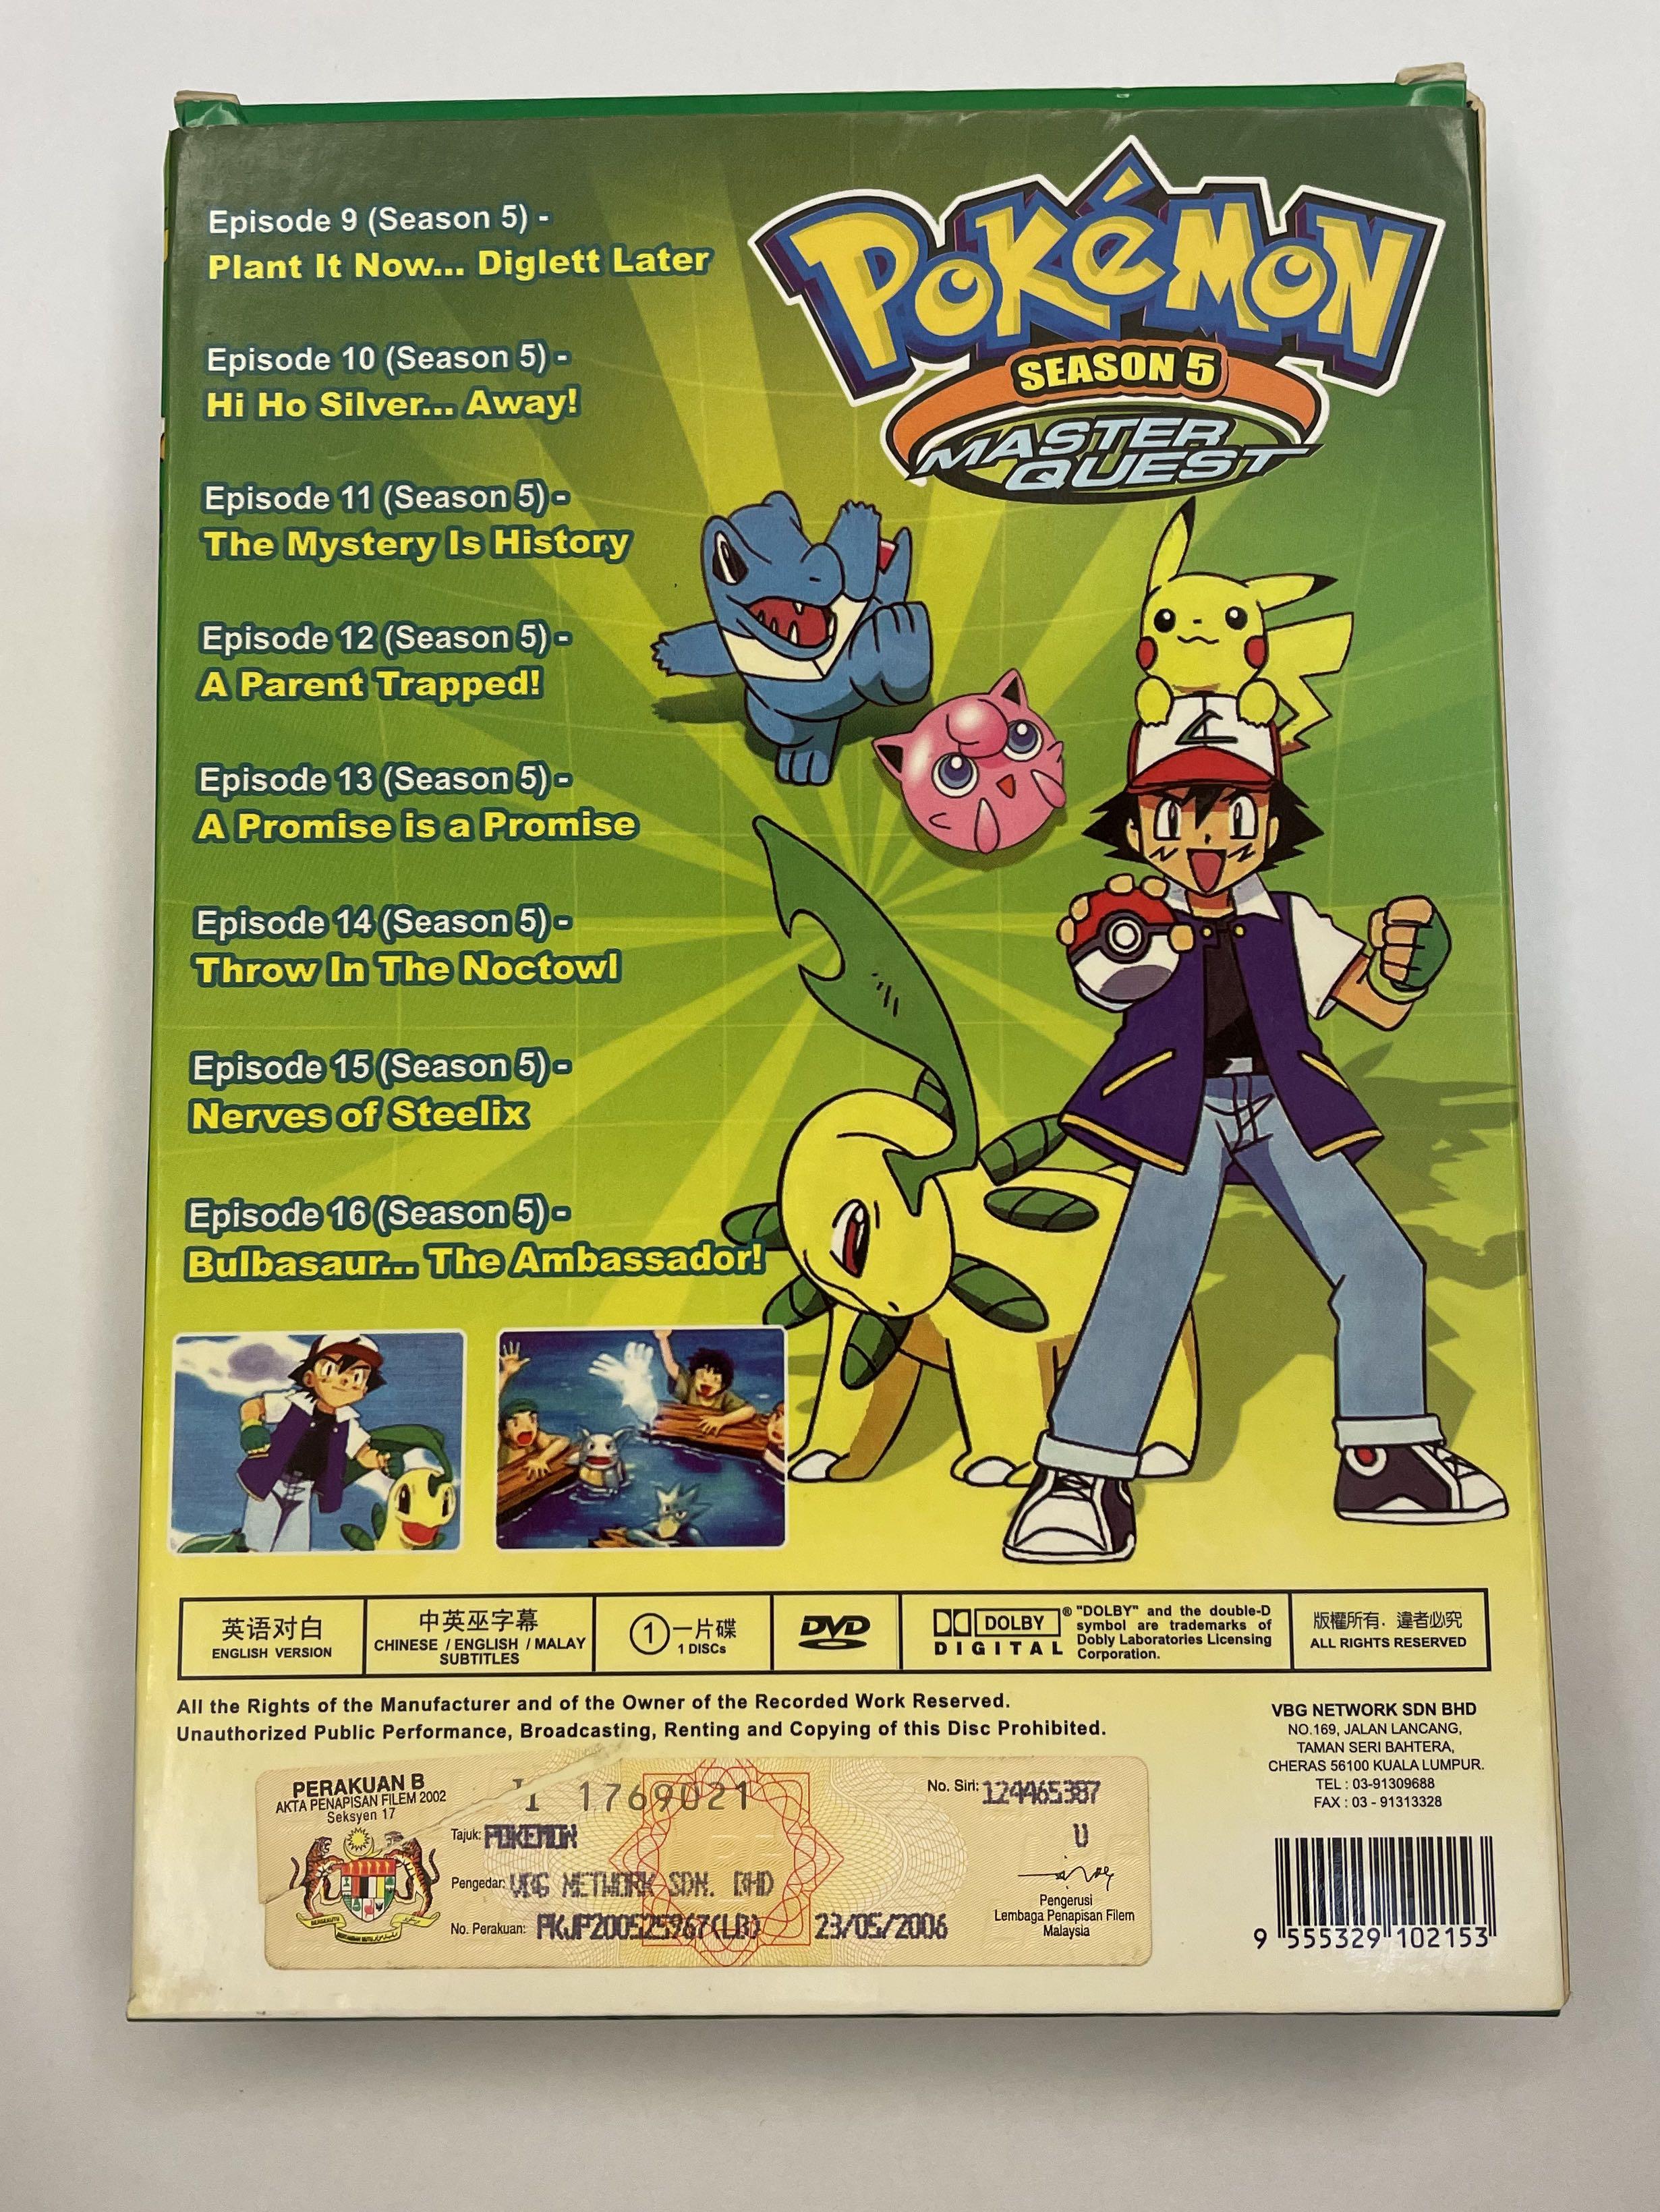 Pokémon (5ª Temporada: Master Quest) - 9 de Agosto de 2001